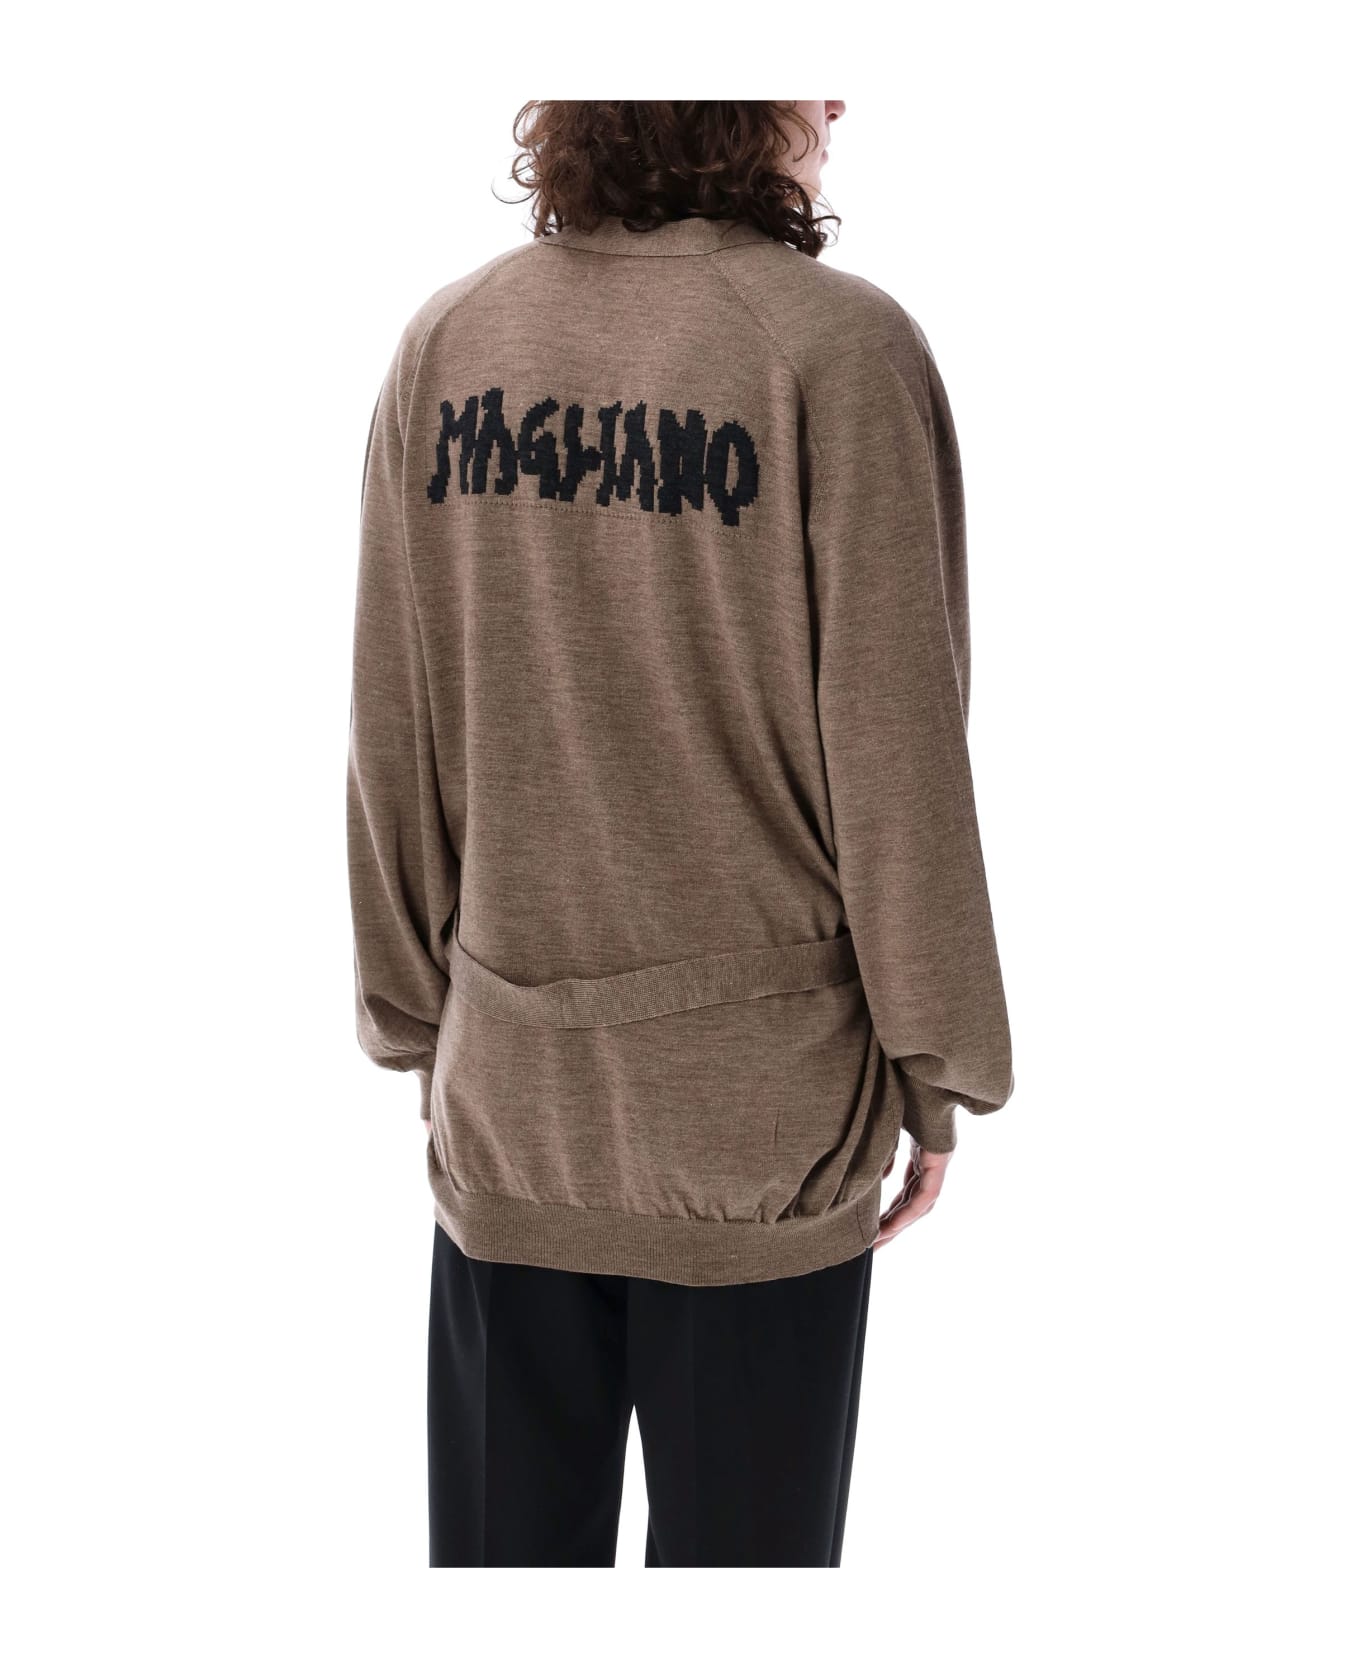 Magliano Oversized Granpa Cardigan - BEIGE